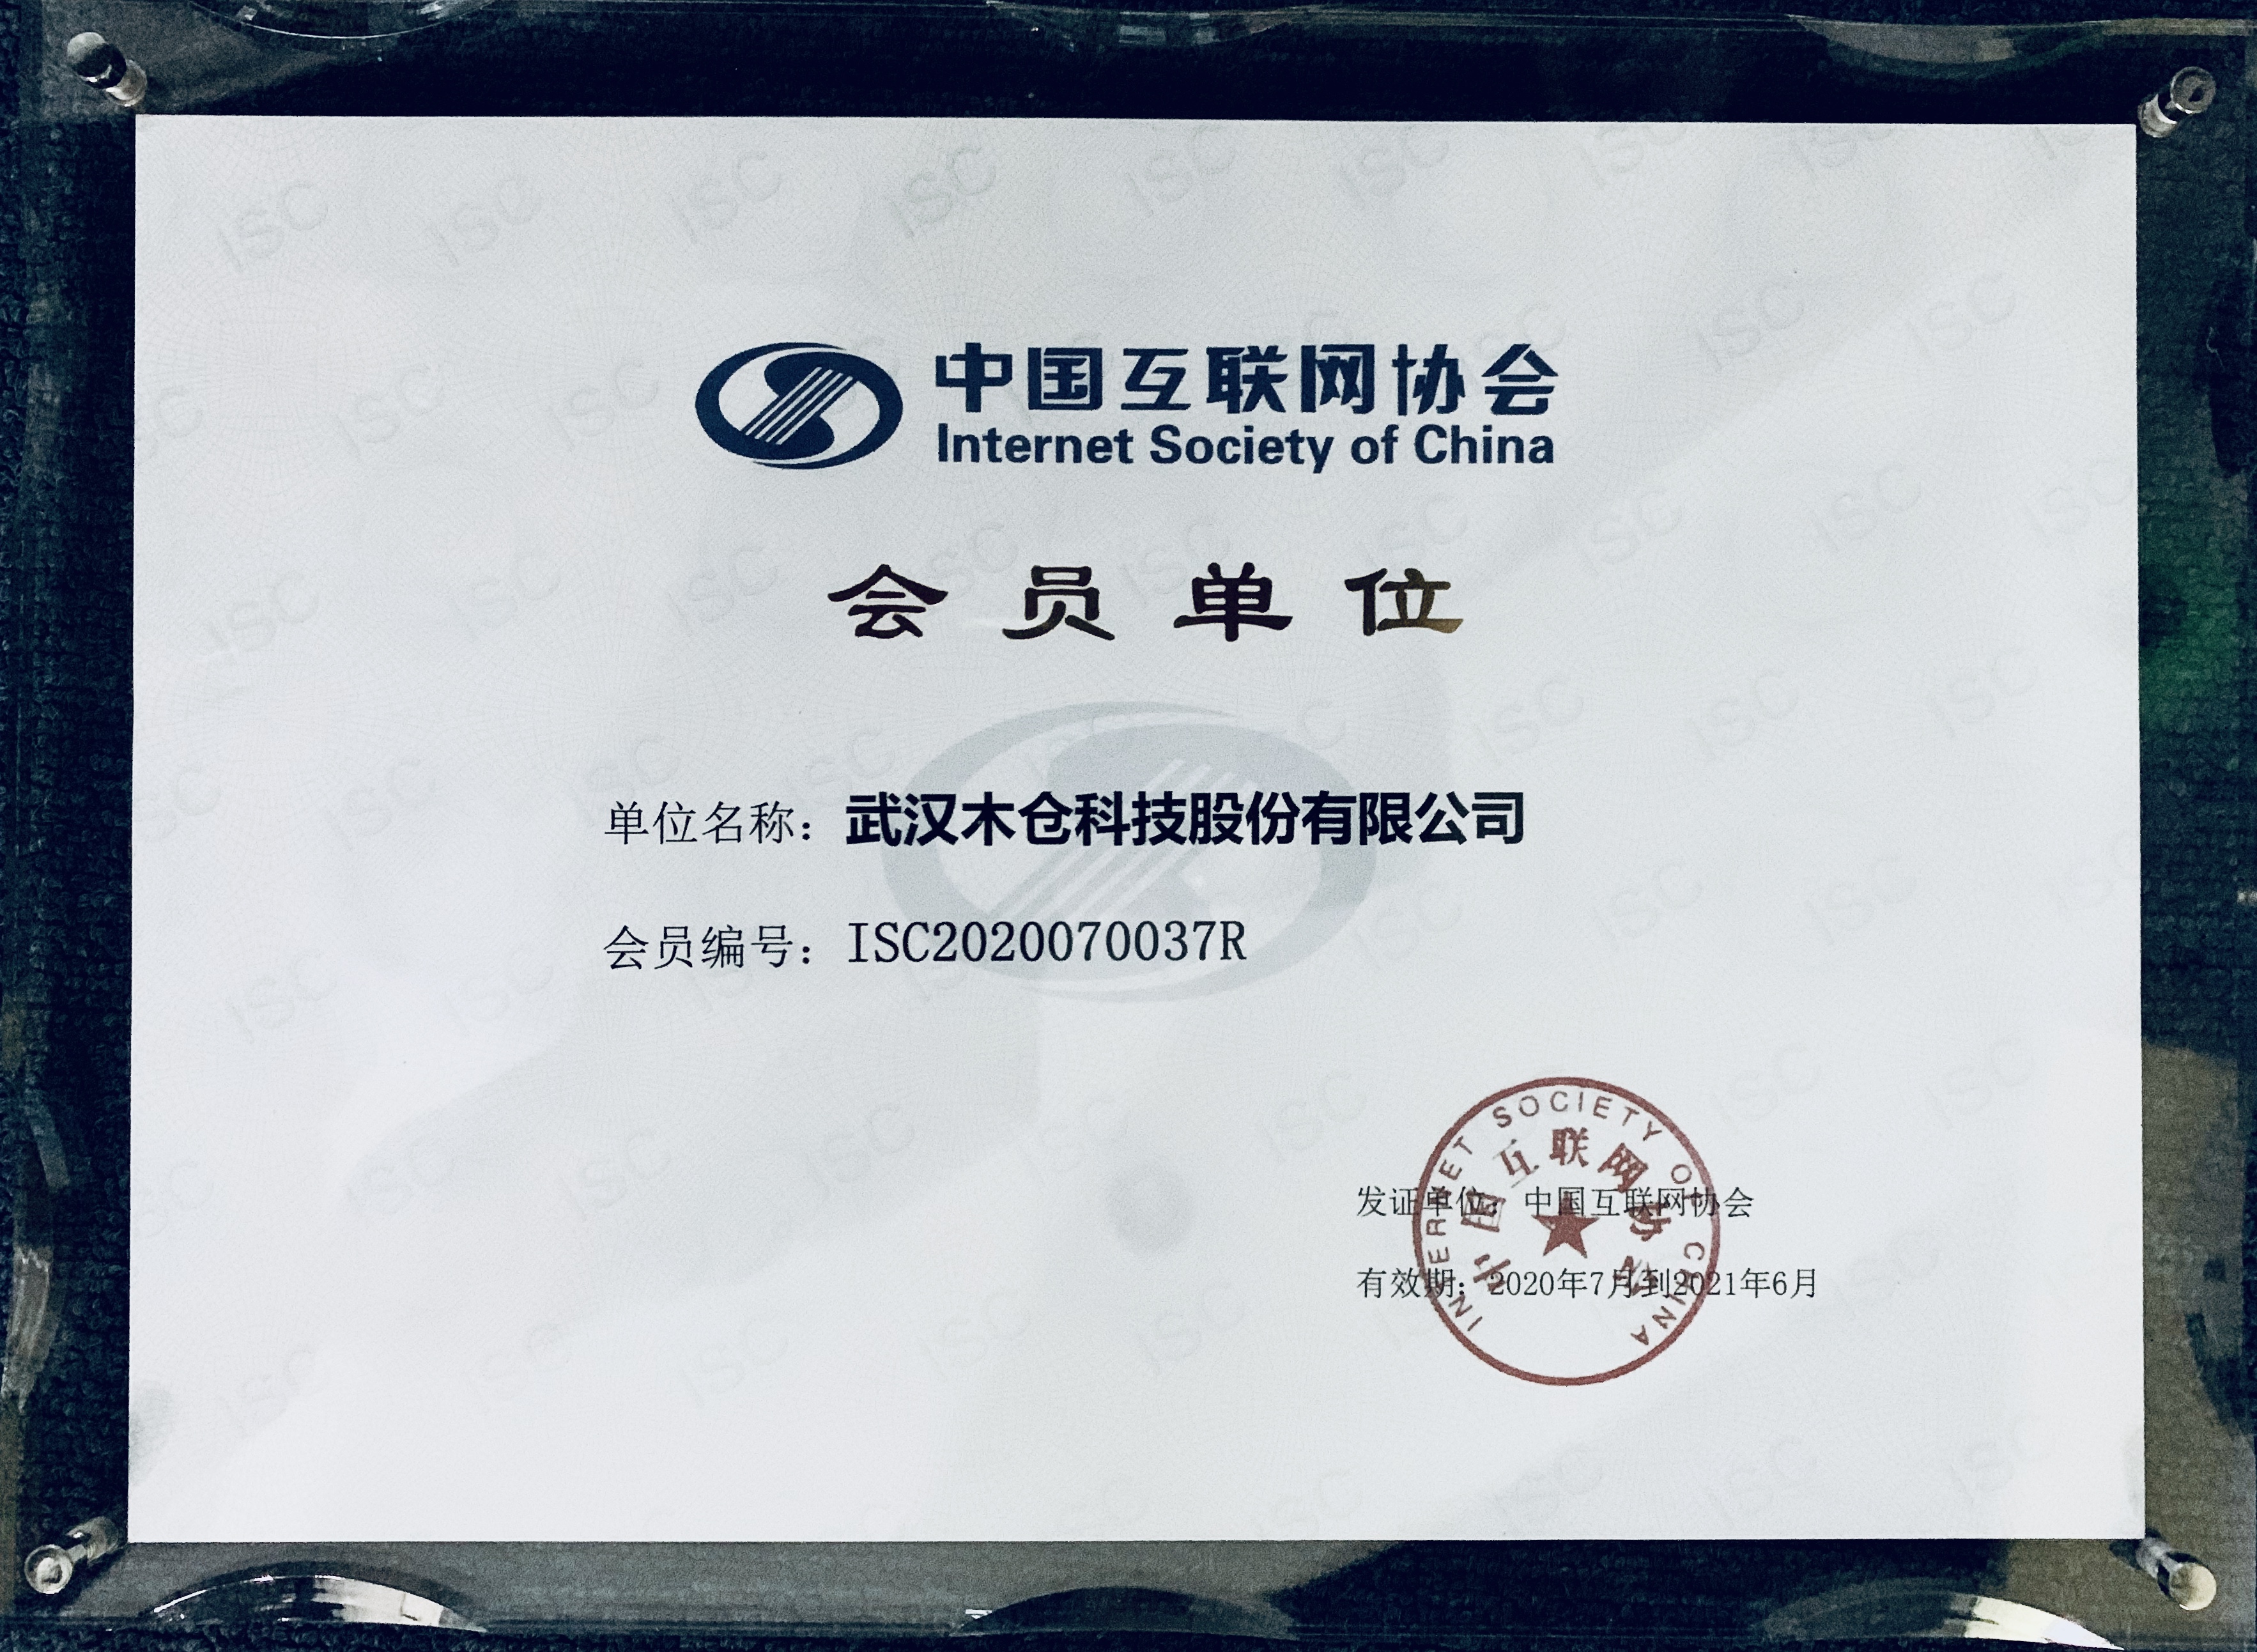 木仓科技正式成为中国互联网协会会员单位